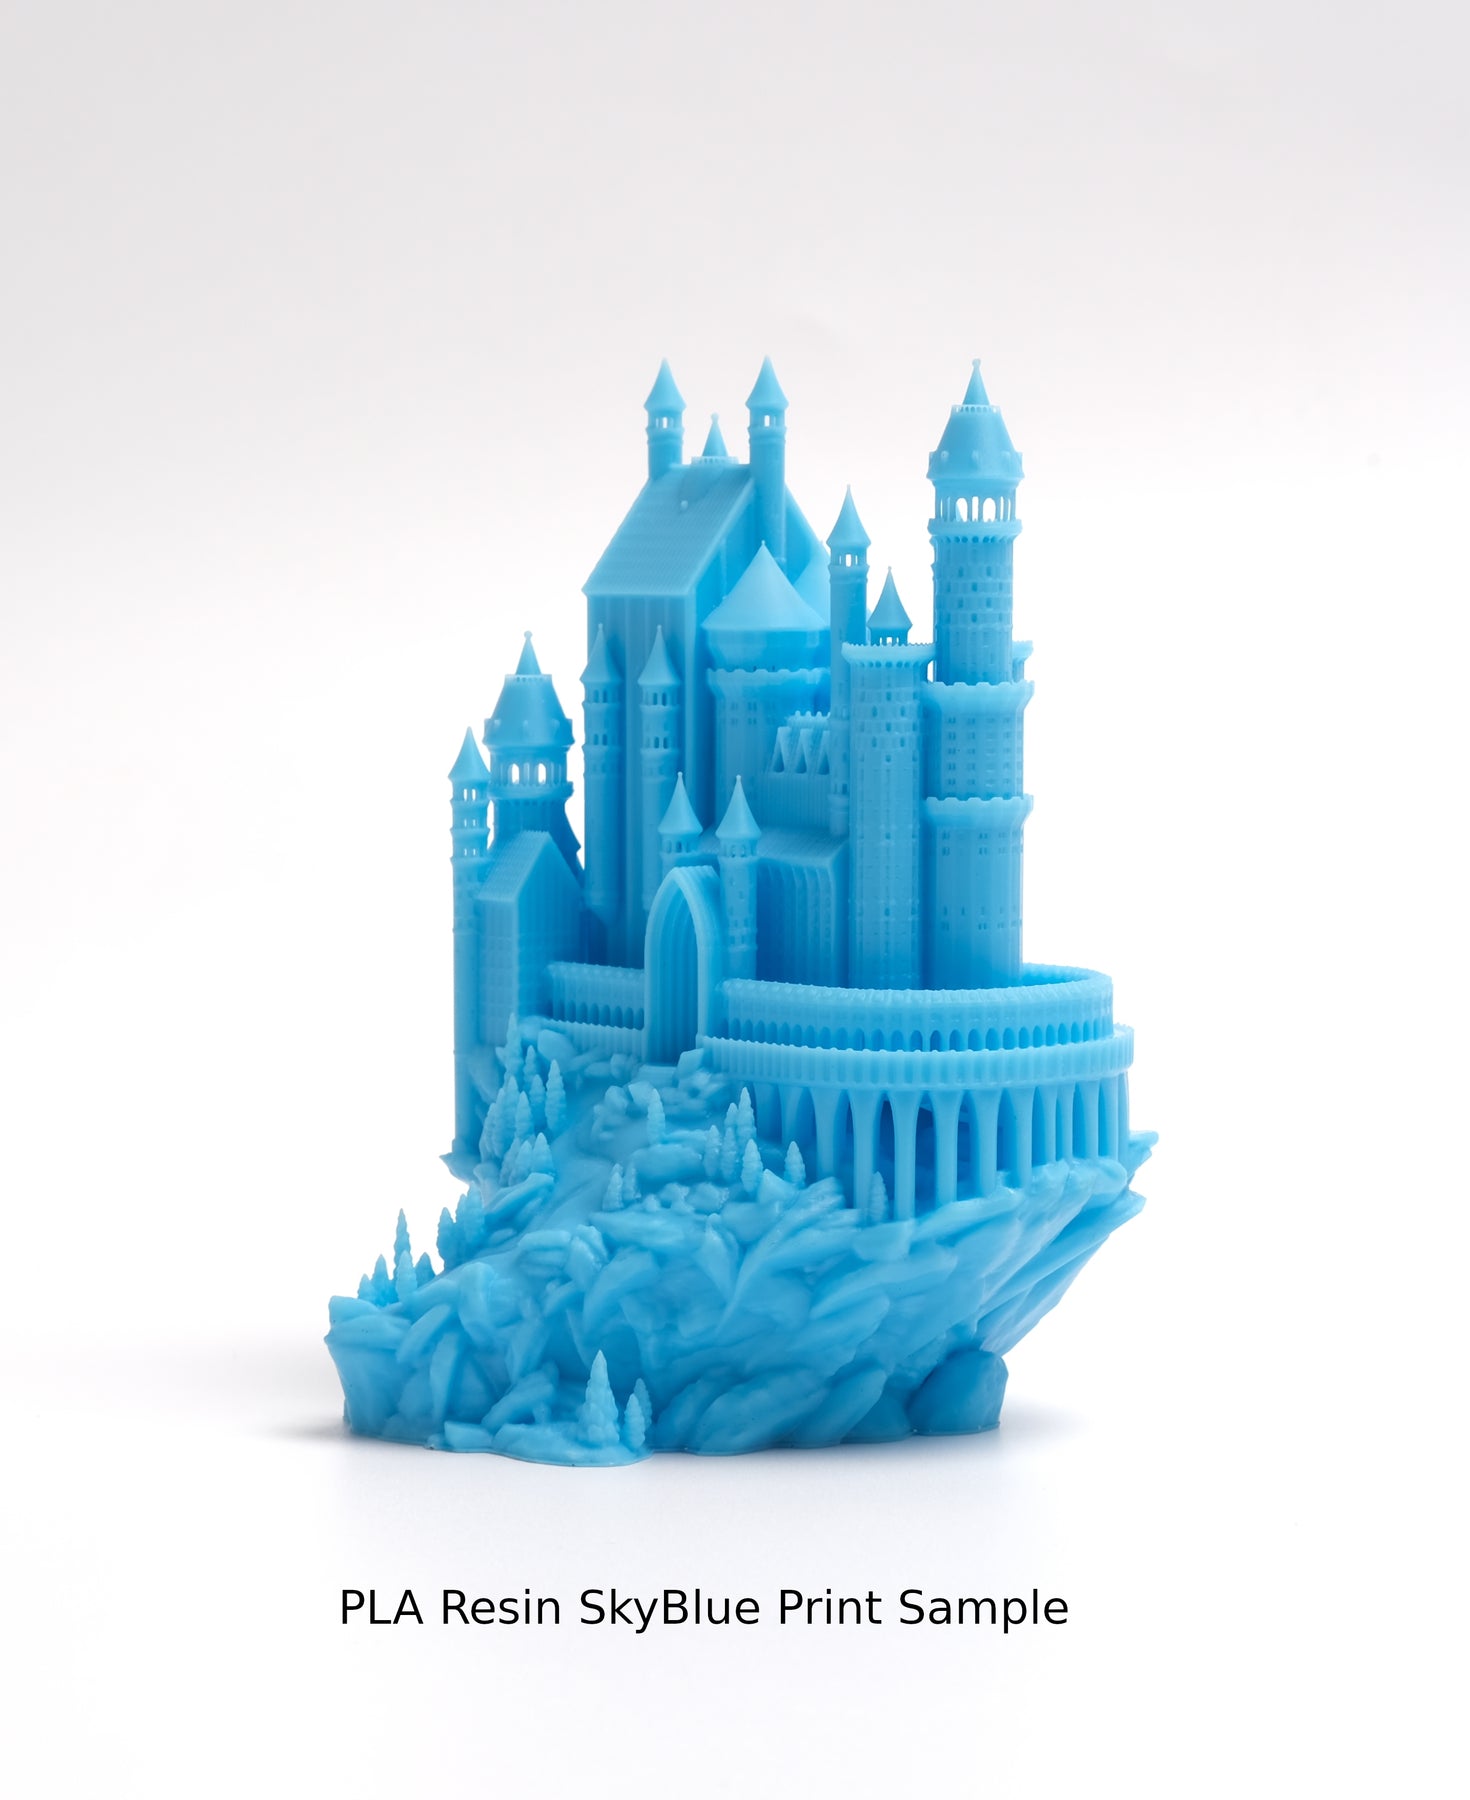 Wholesale Case -- 10 spools of EPAX Magic Silk PLA 3D Printer Filament –  EPAX 3D